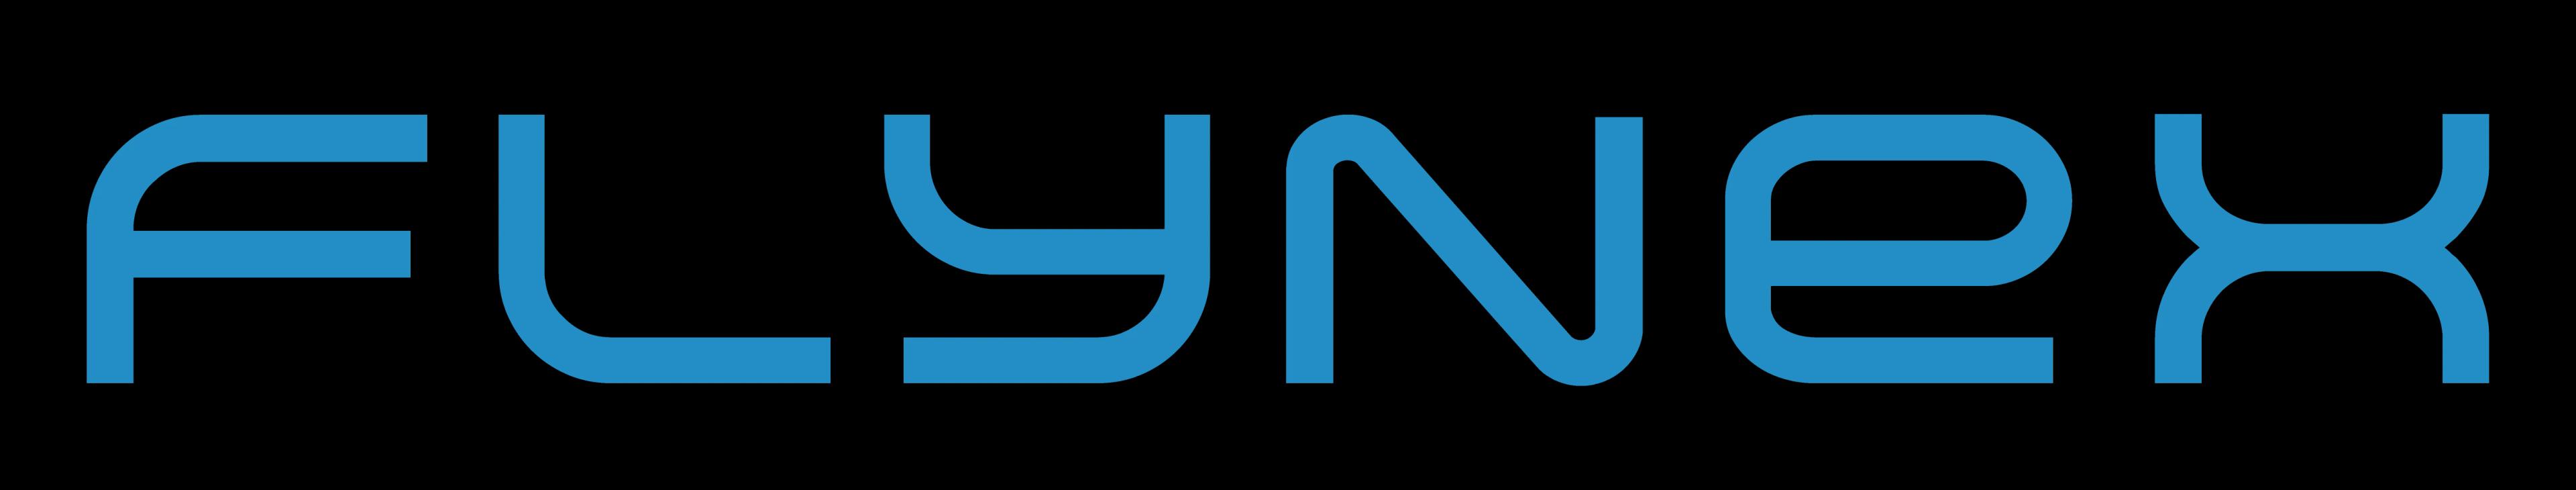 FlyNex GmbH